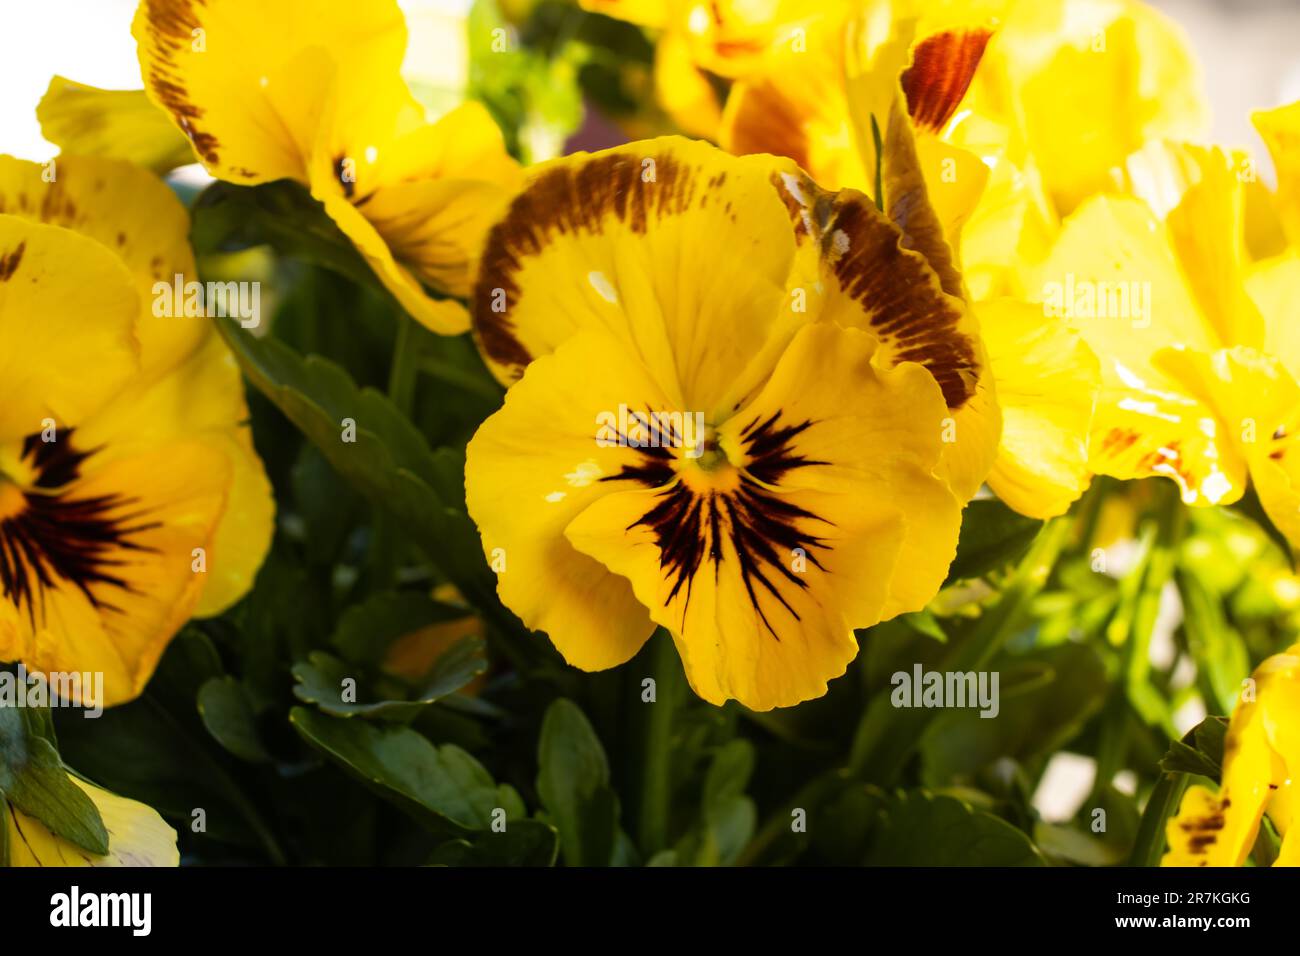 Beautiful yellow pansies (violas) flowers Stock Photo